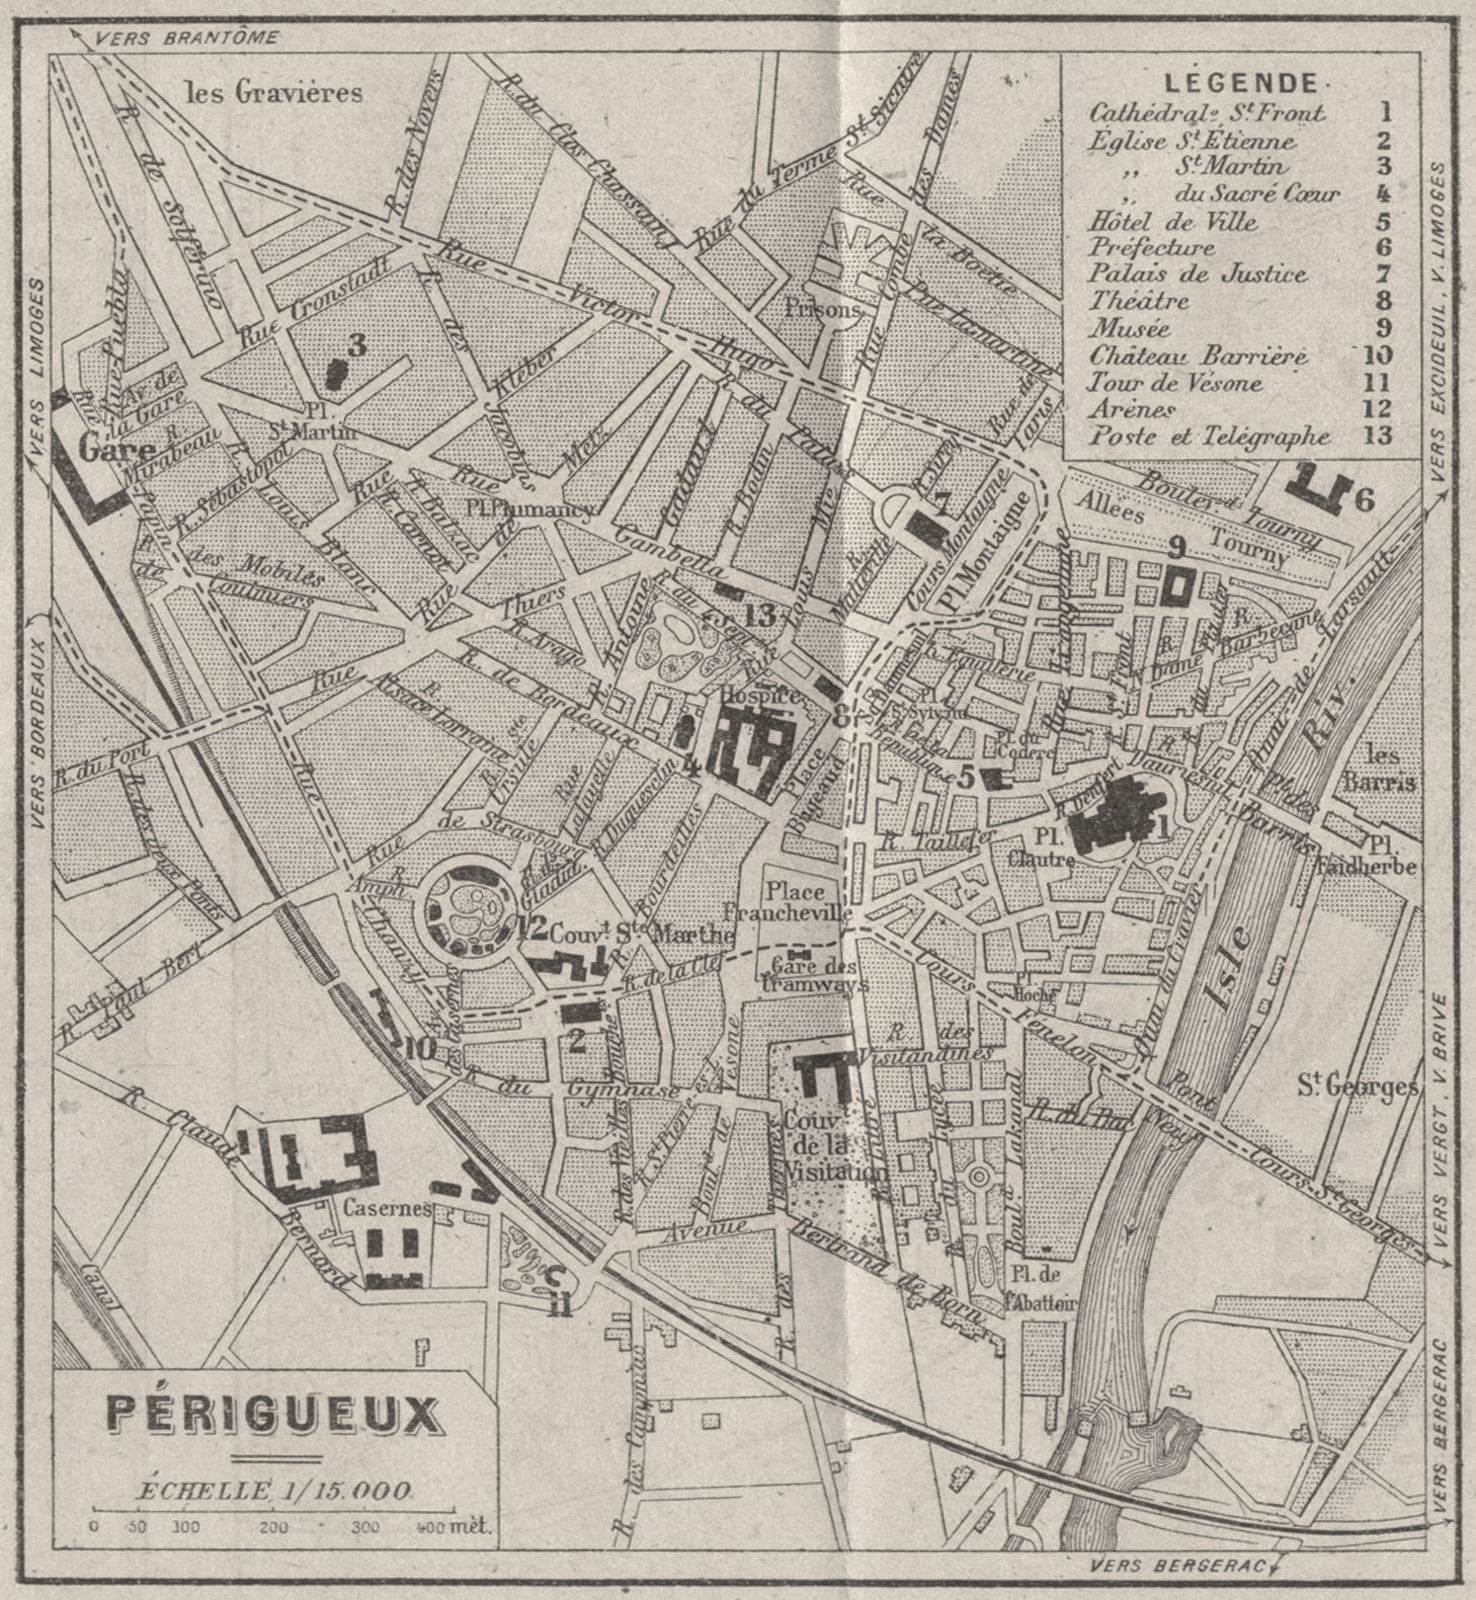 DORDOGNE. Périgueux 1923 old antique vintage map plan chart